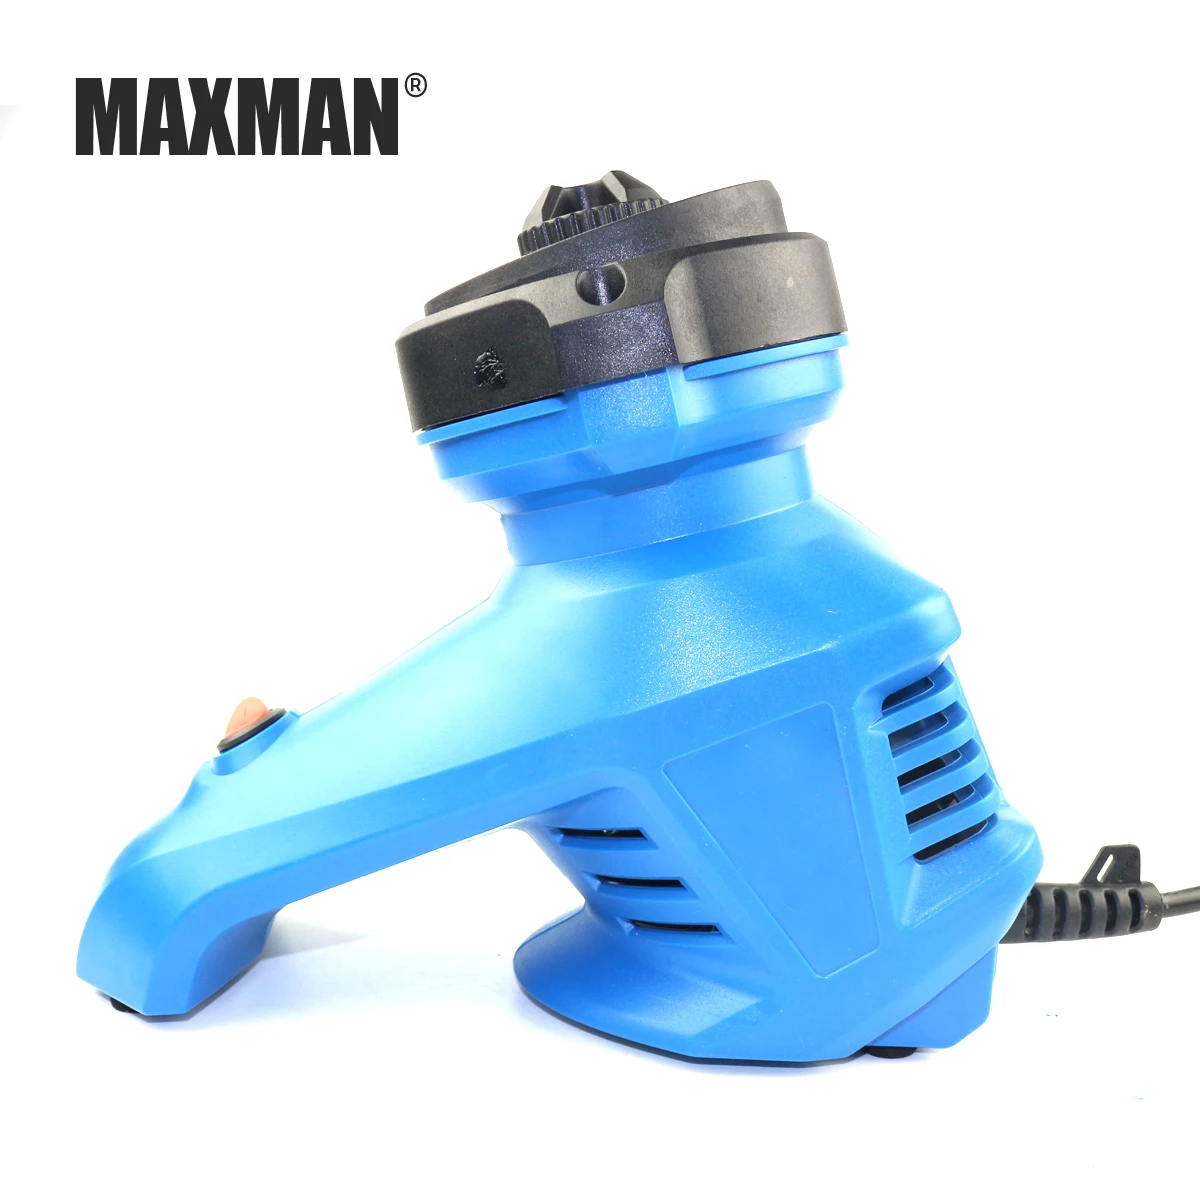 MAXMAN 220 V Электрический Точило для головки сверла высокое Скорость дрель шлифовальная машина 96 W 1350 об/мин Мощность инструменты для шлифовальная дрель Размеры 3~ 12 мм